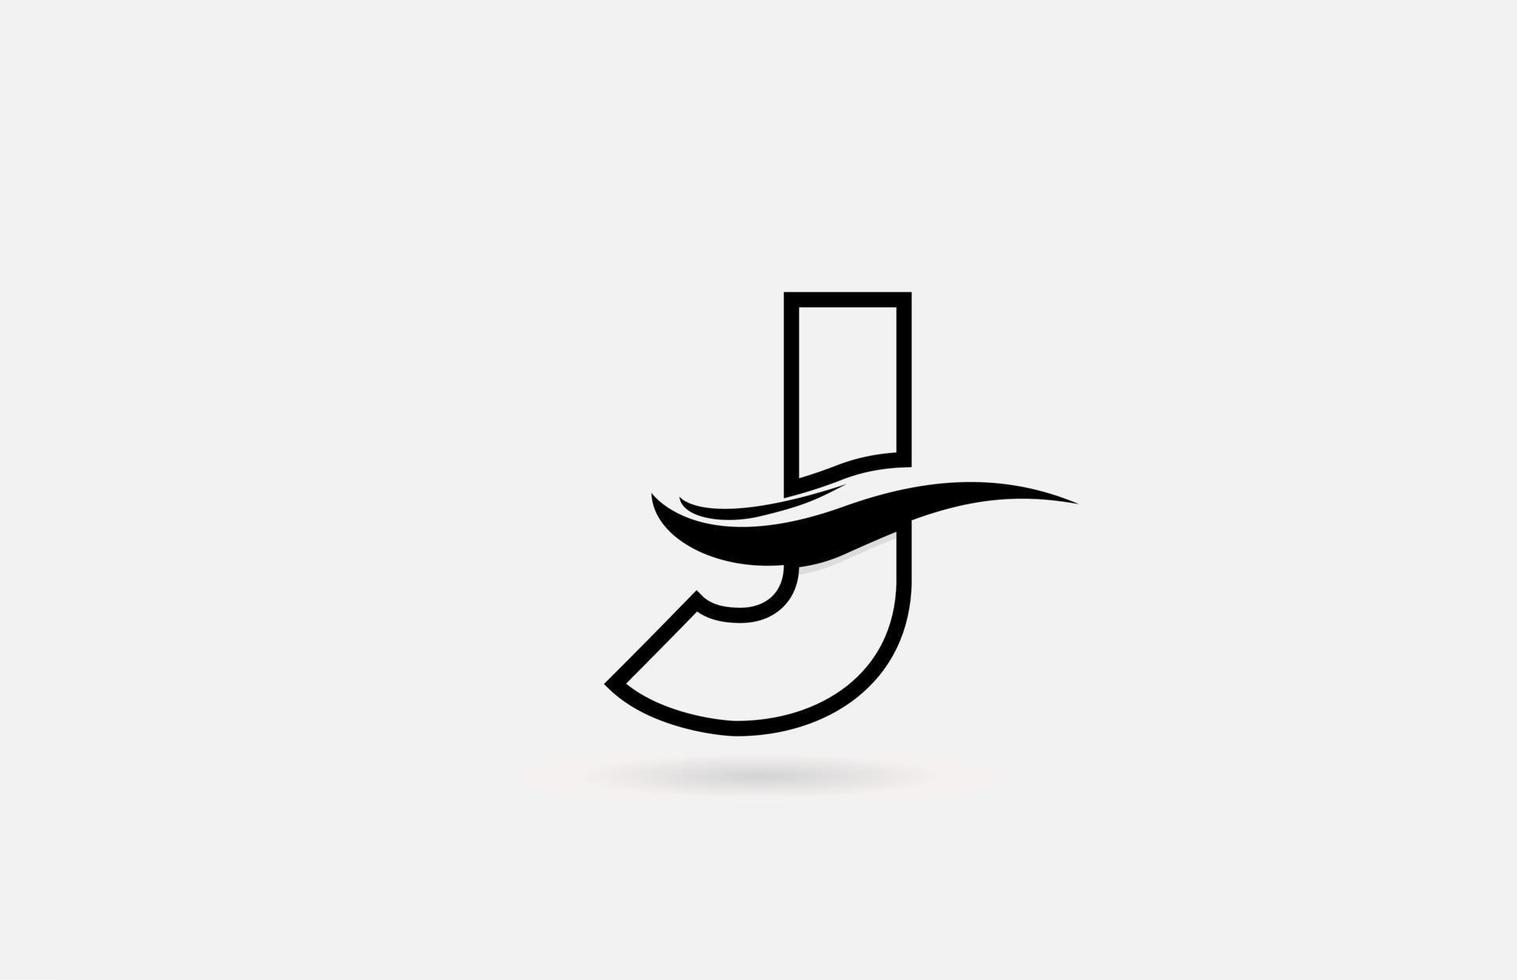 j icona del logo della lettera dell'alfabeto in bianco e nero per affari e società con un design di linea semplice vettore